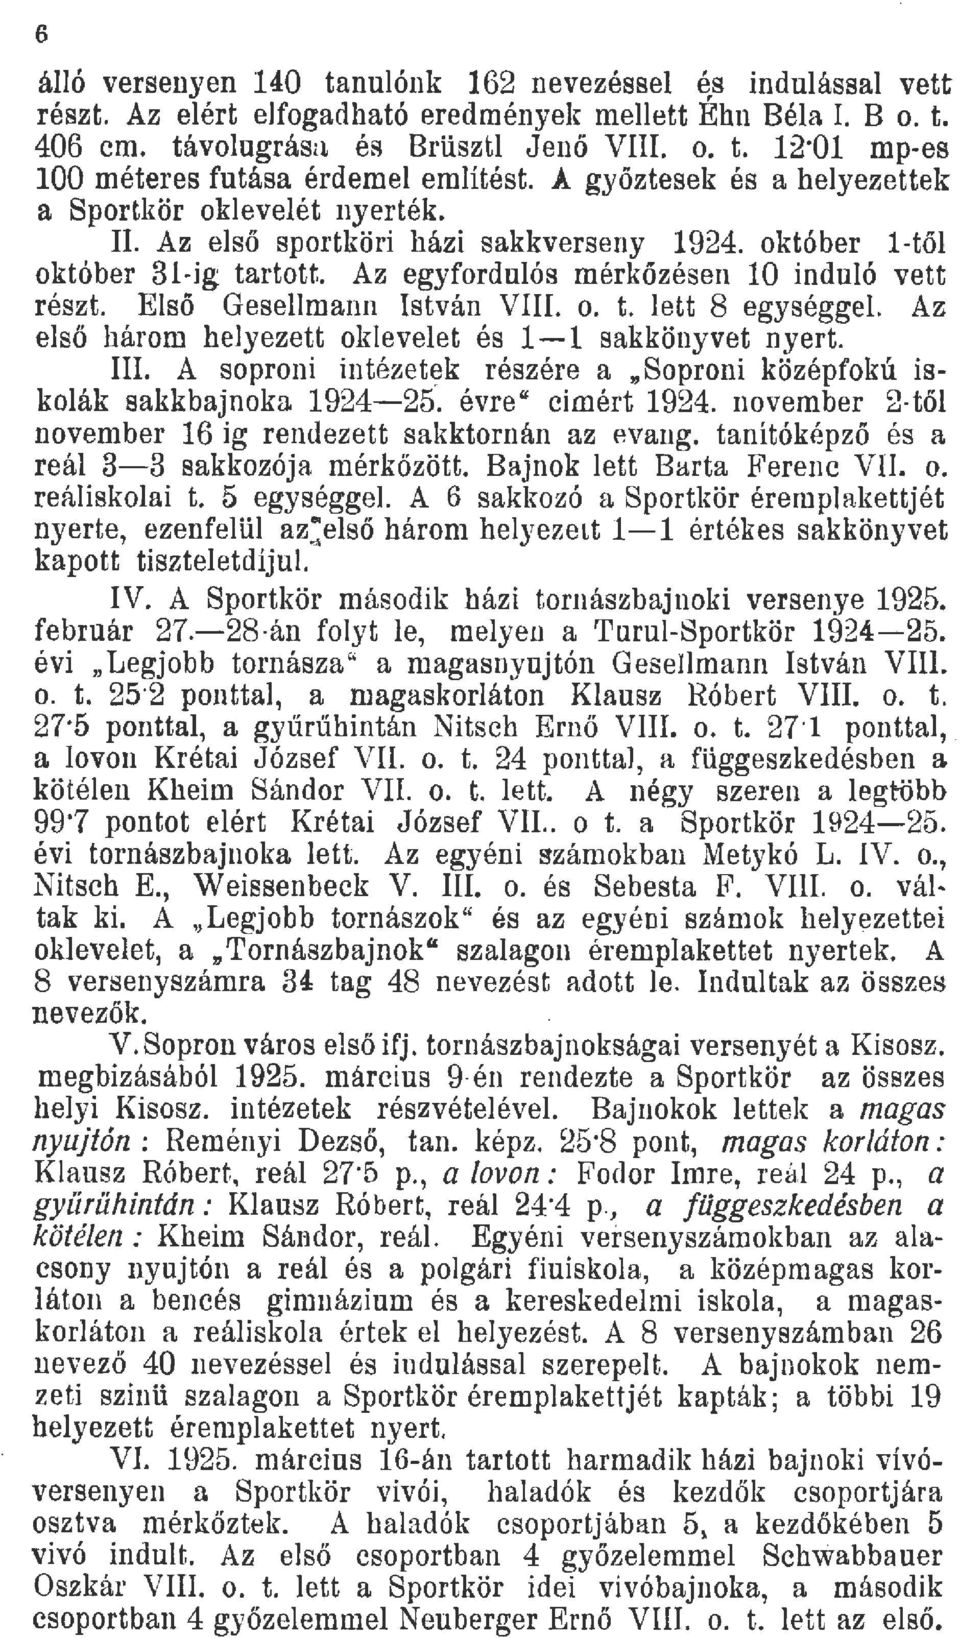 Eső Gesemann István VIII. o. t. ett 8 egységge. Az, eső három heyezett okeveet és 1-1 sakkönyvet nyert.. A soproni intézetk részére a "Soproni középfokú iskoák sakkbajnoka 1924-25. évre" eimért 1924.